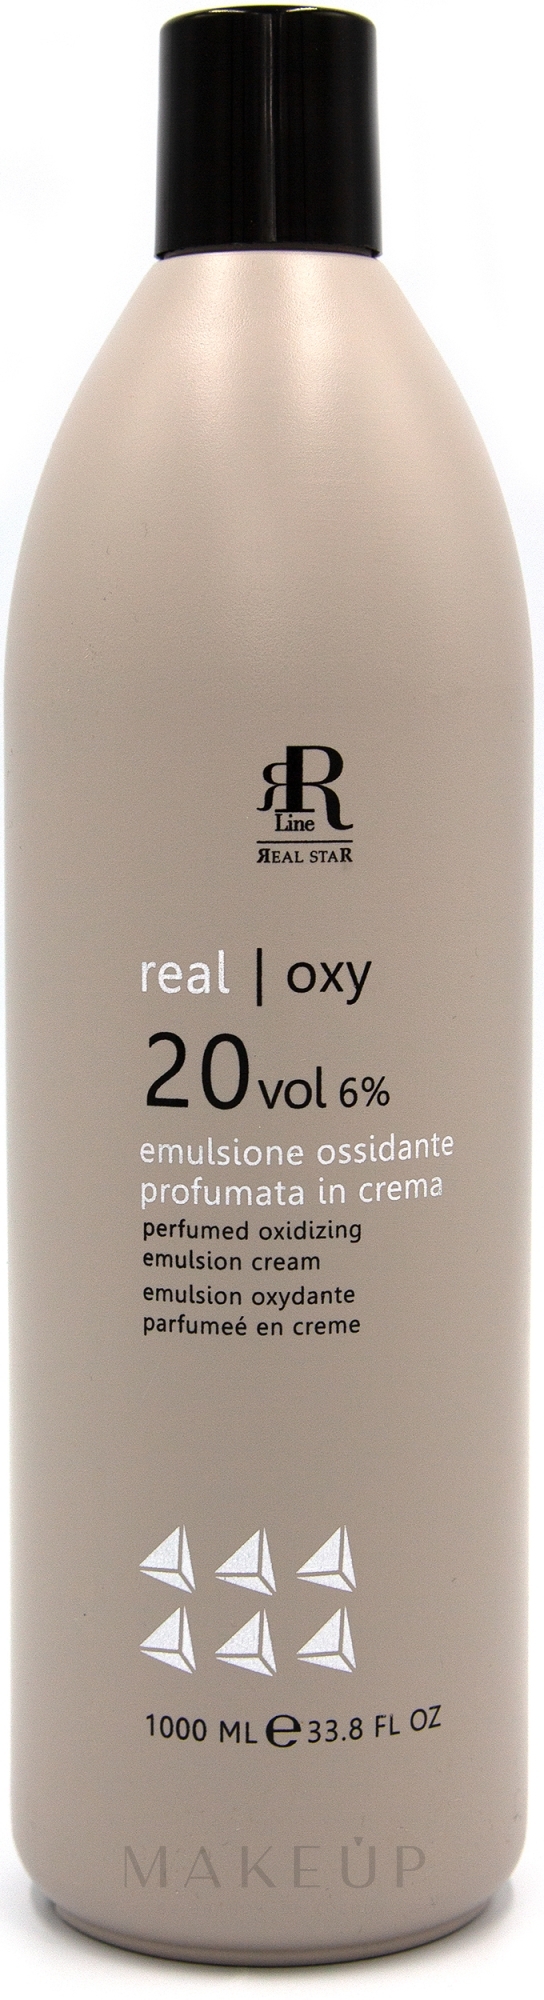 Parfümierte oxidierende Emulsion 6% - RR Line Parfymed Ossidante Emulsione Cream 6% 20 Vol — Bild 1000 ml